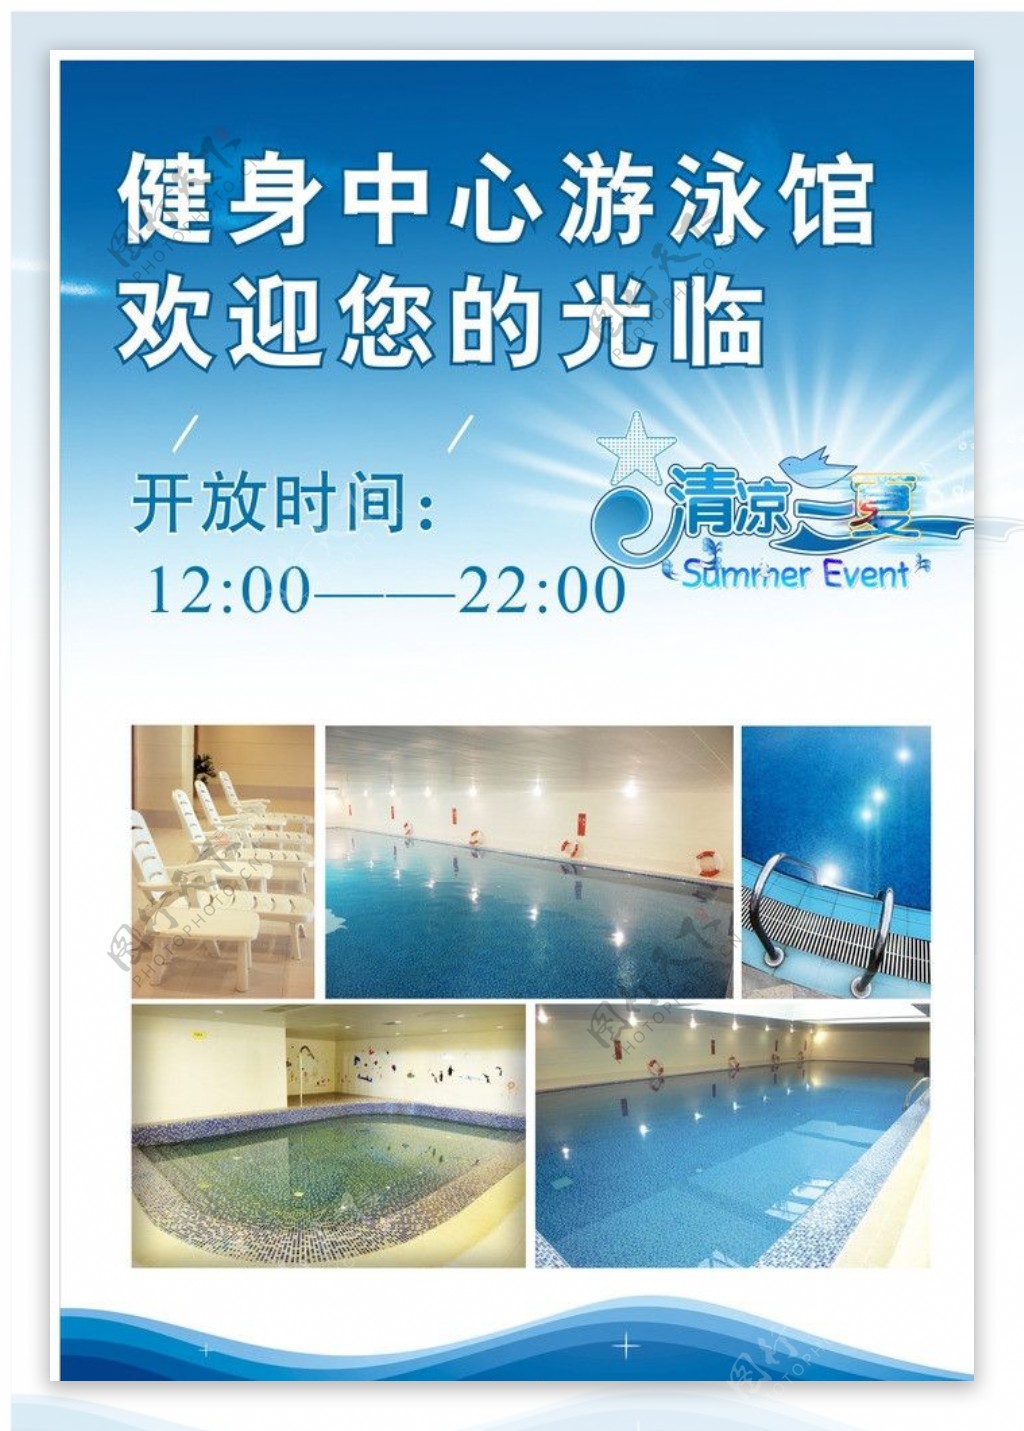 游泳池宣传海报图片